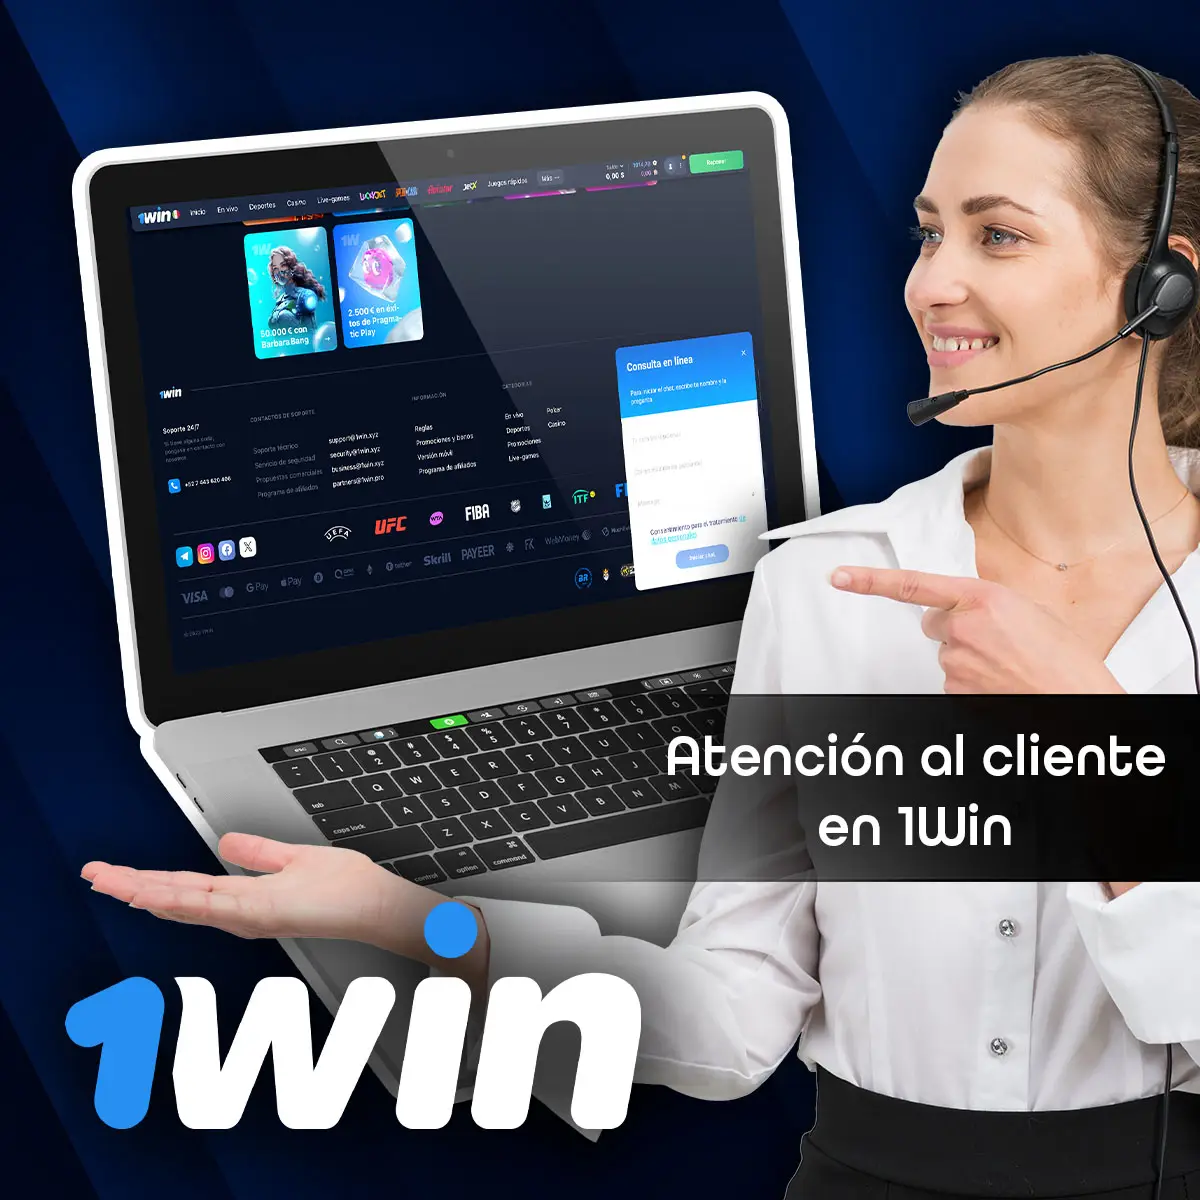 El servicio de asistencia de 1Win México está disponible las 24 horas del día y responde rápidamente a todas las preguntas